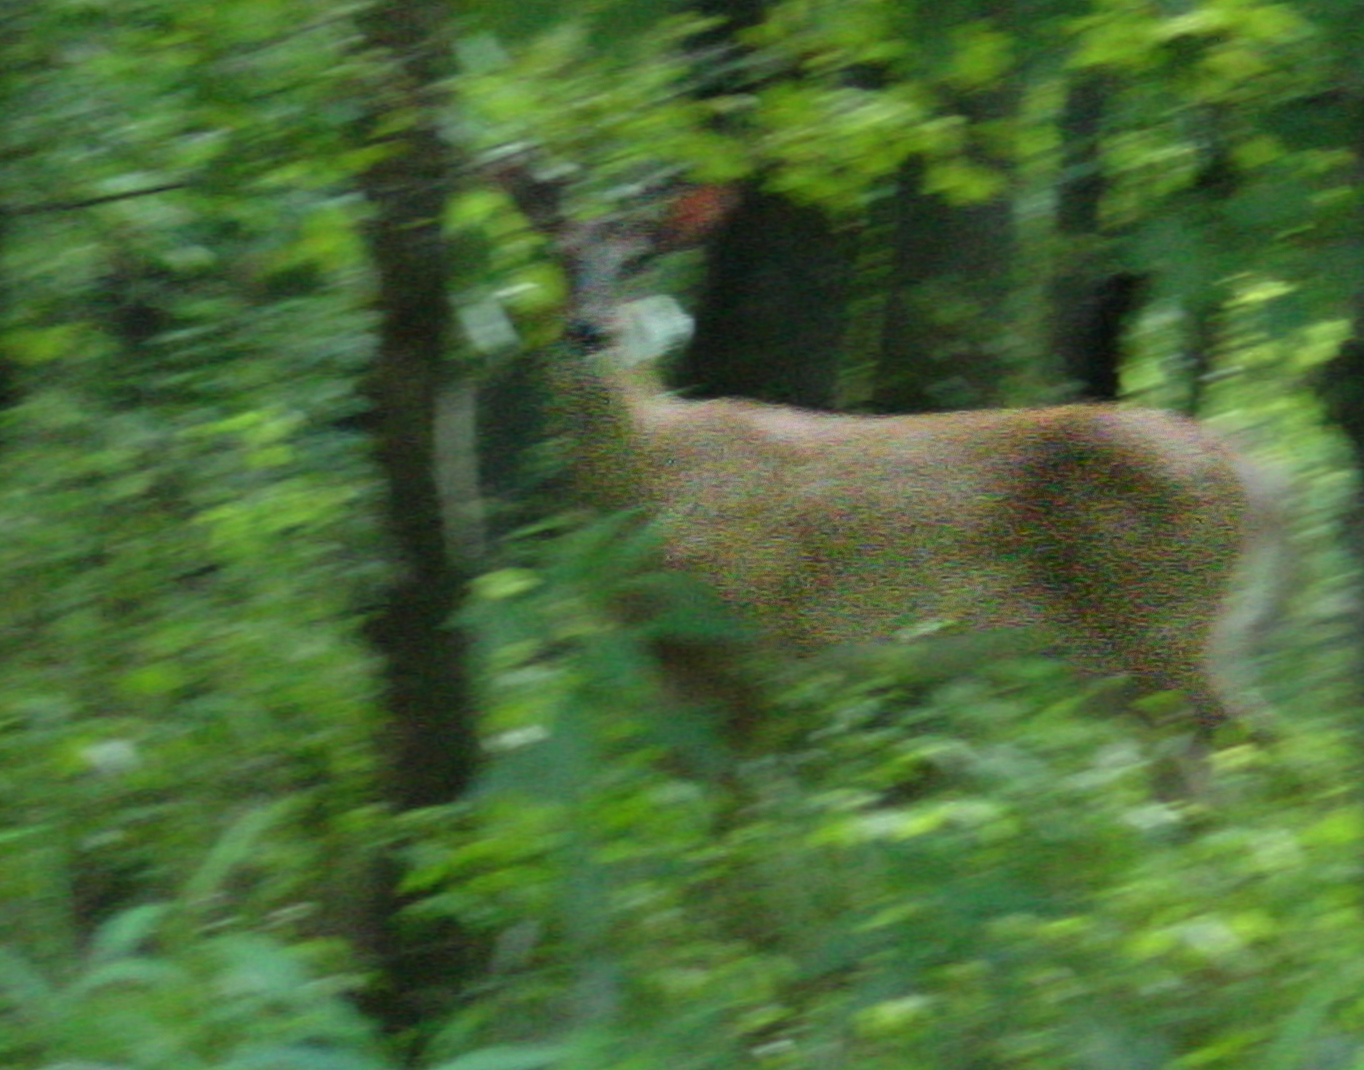 A blurry photo of a deer. 